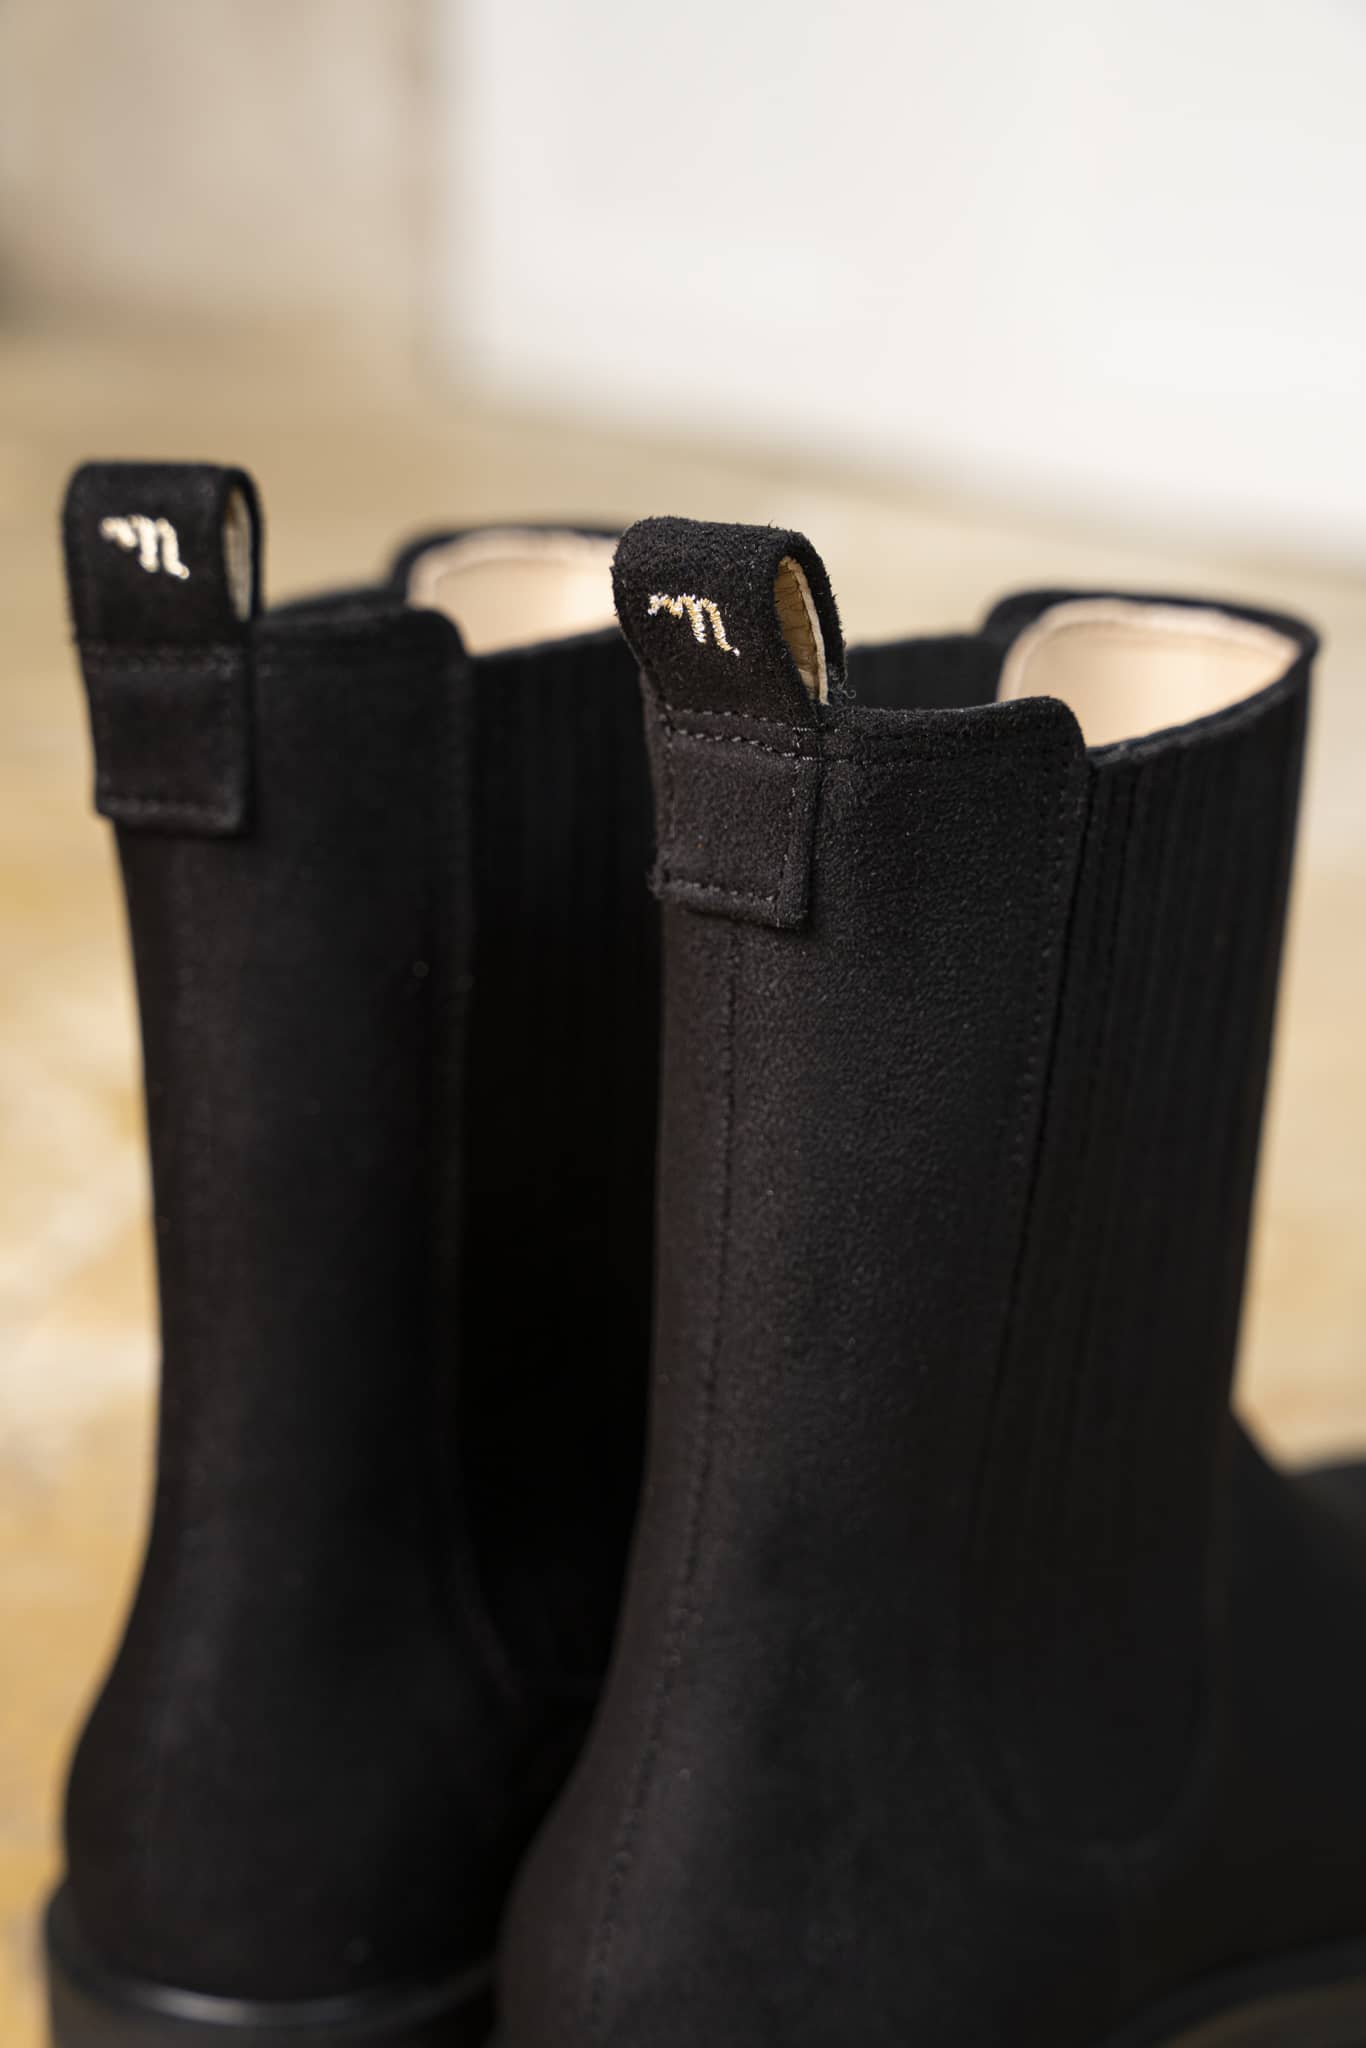 Bottines plates noires vegan style chelsea boots pour femme Mystique Minuit sur Terre